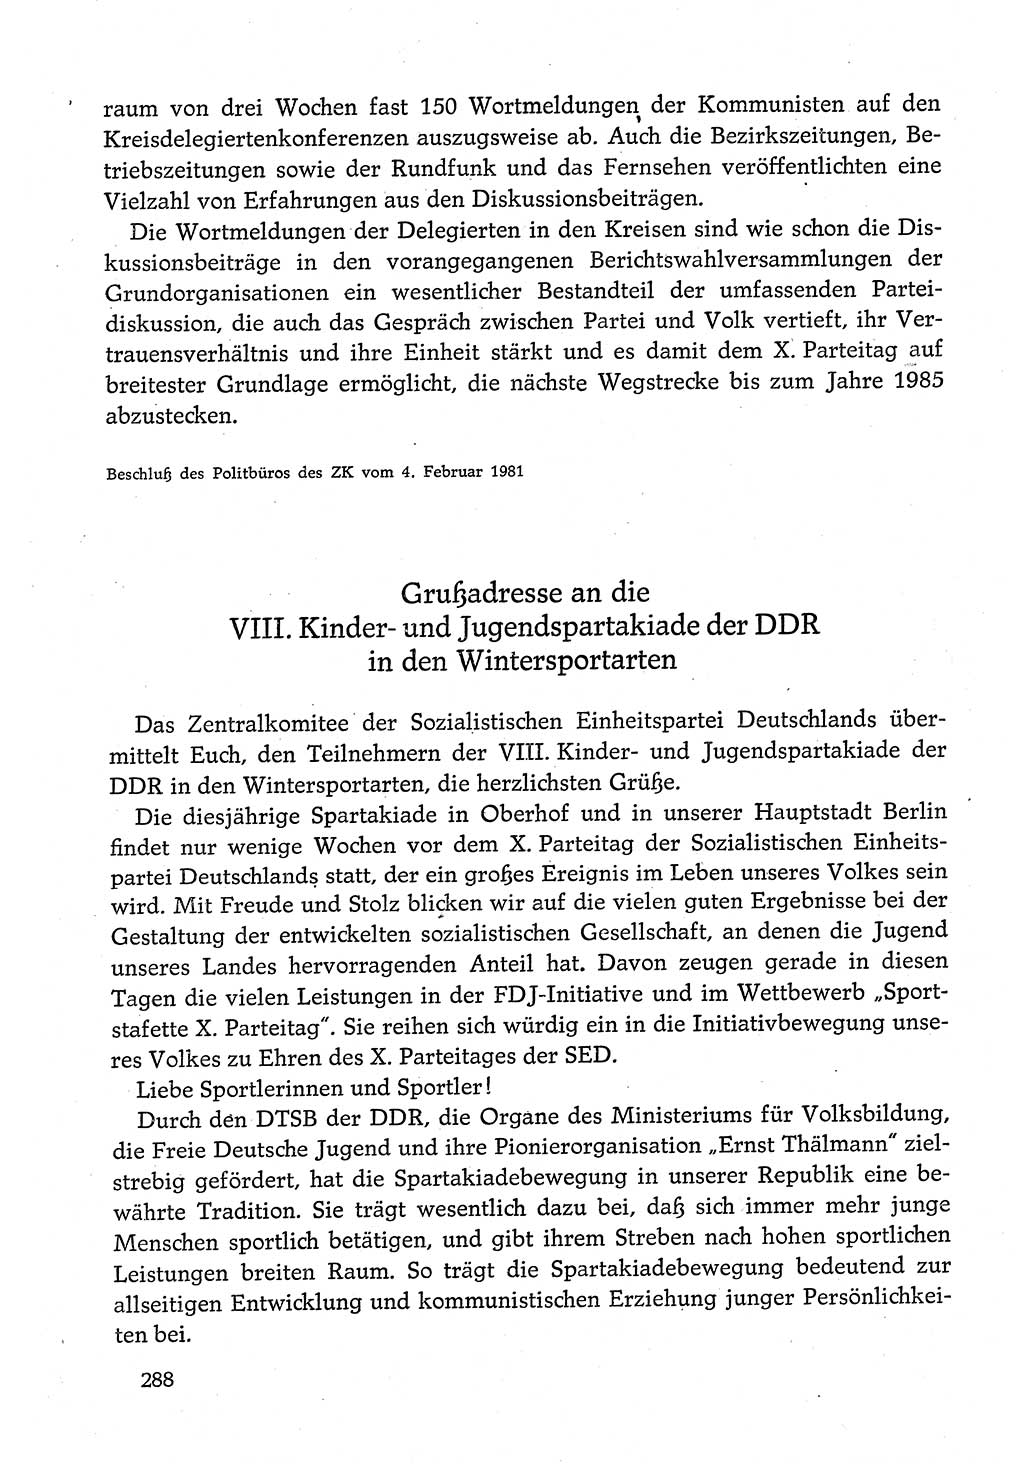 Dokumente der Sozialistischen Einheitspartei Deutschlands (SED) [Deutsche Demokratische Republik (DDR)] 1980-1981, Seite 288 (Dok. SED DDR 1980-1981, S. 288)